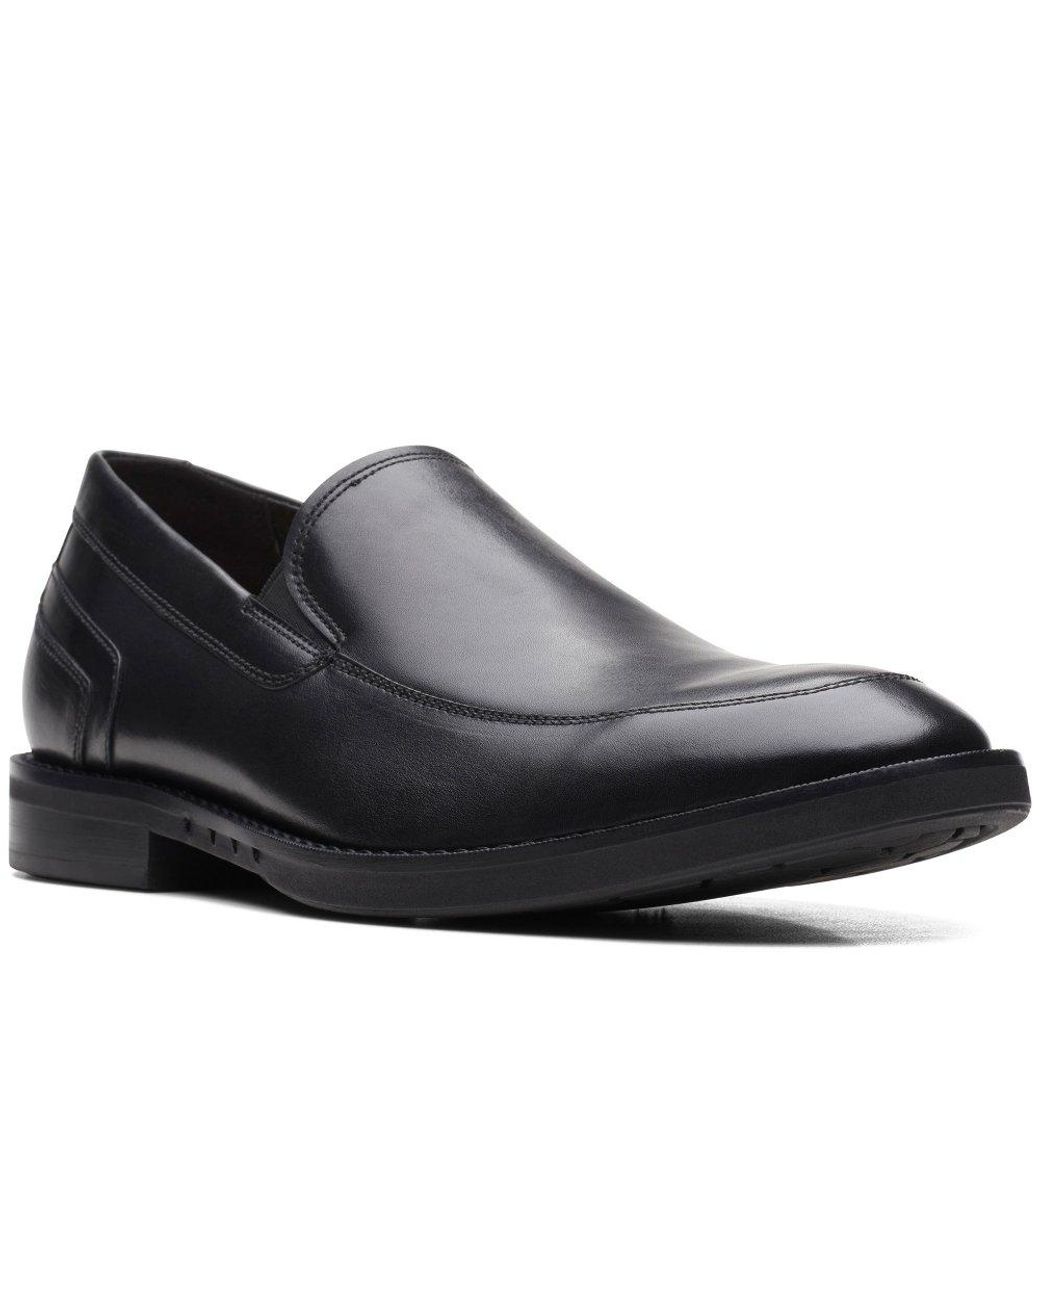 Clarks Un Hugh Step Formal Slip On Shoes in Black for Men | Lyst UK